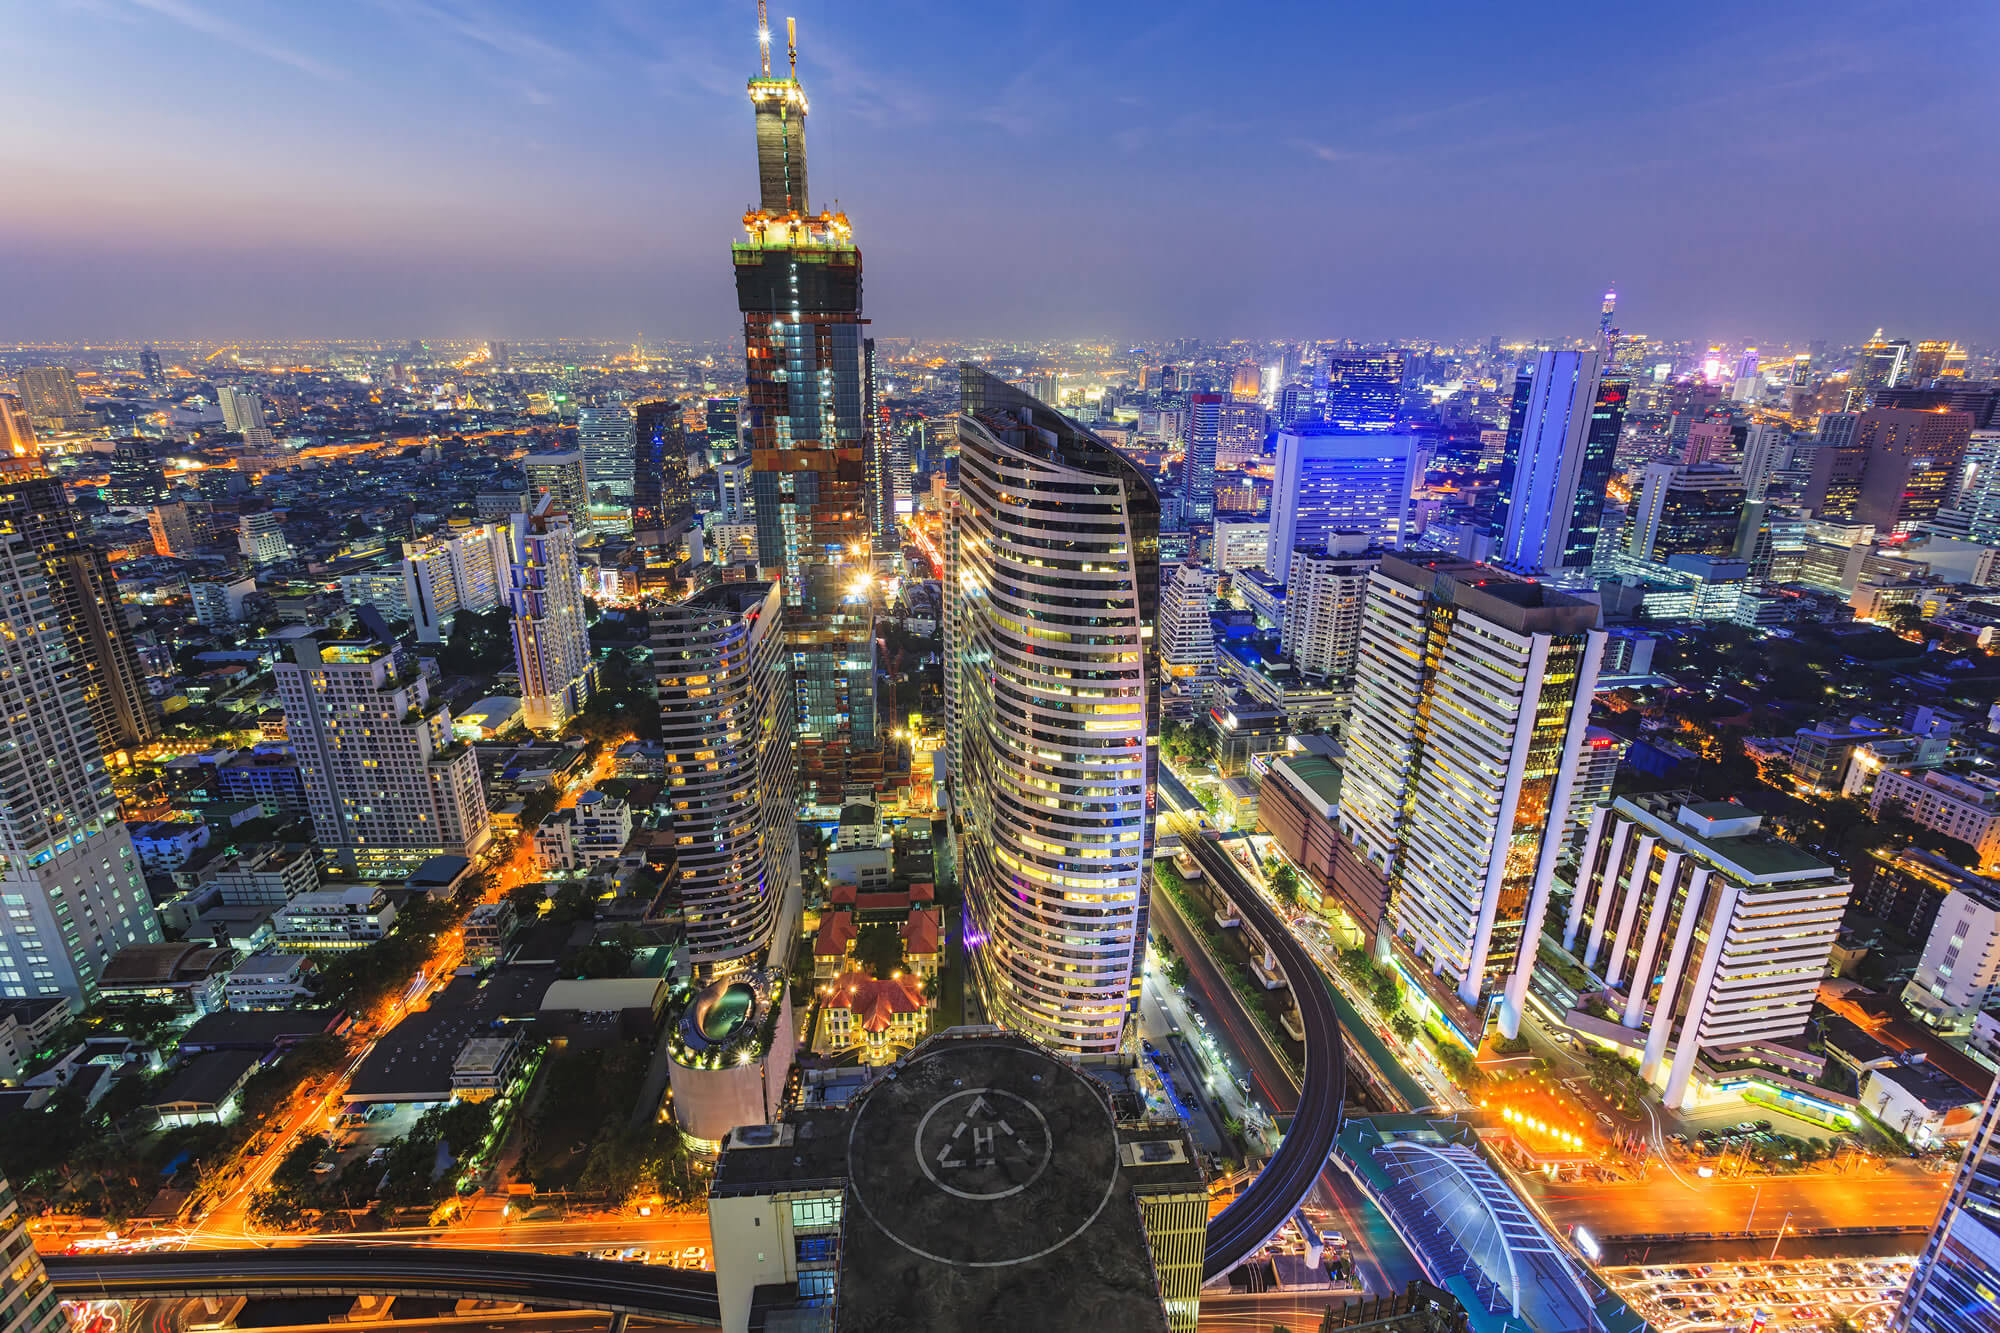 Building cityscape in Bangkok, Thailand